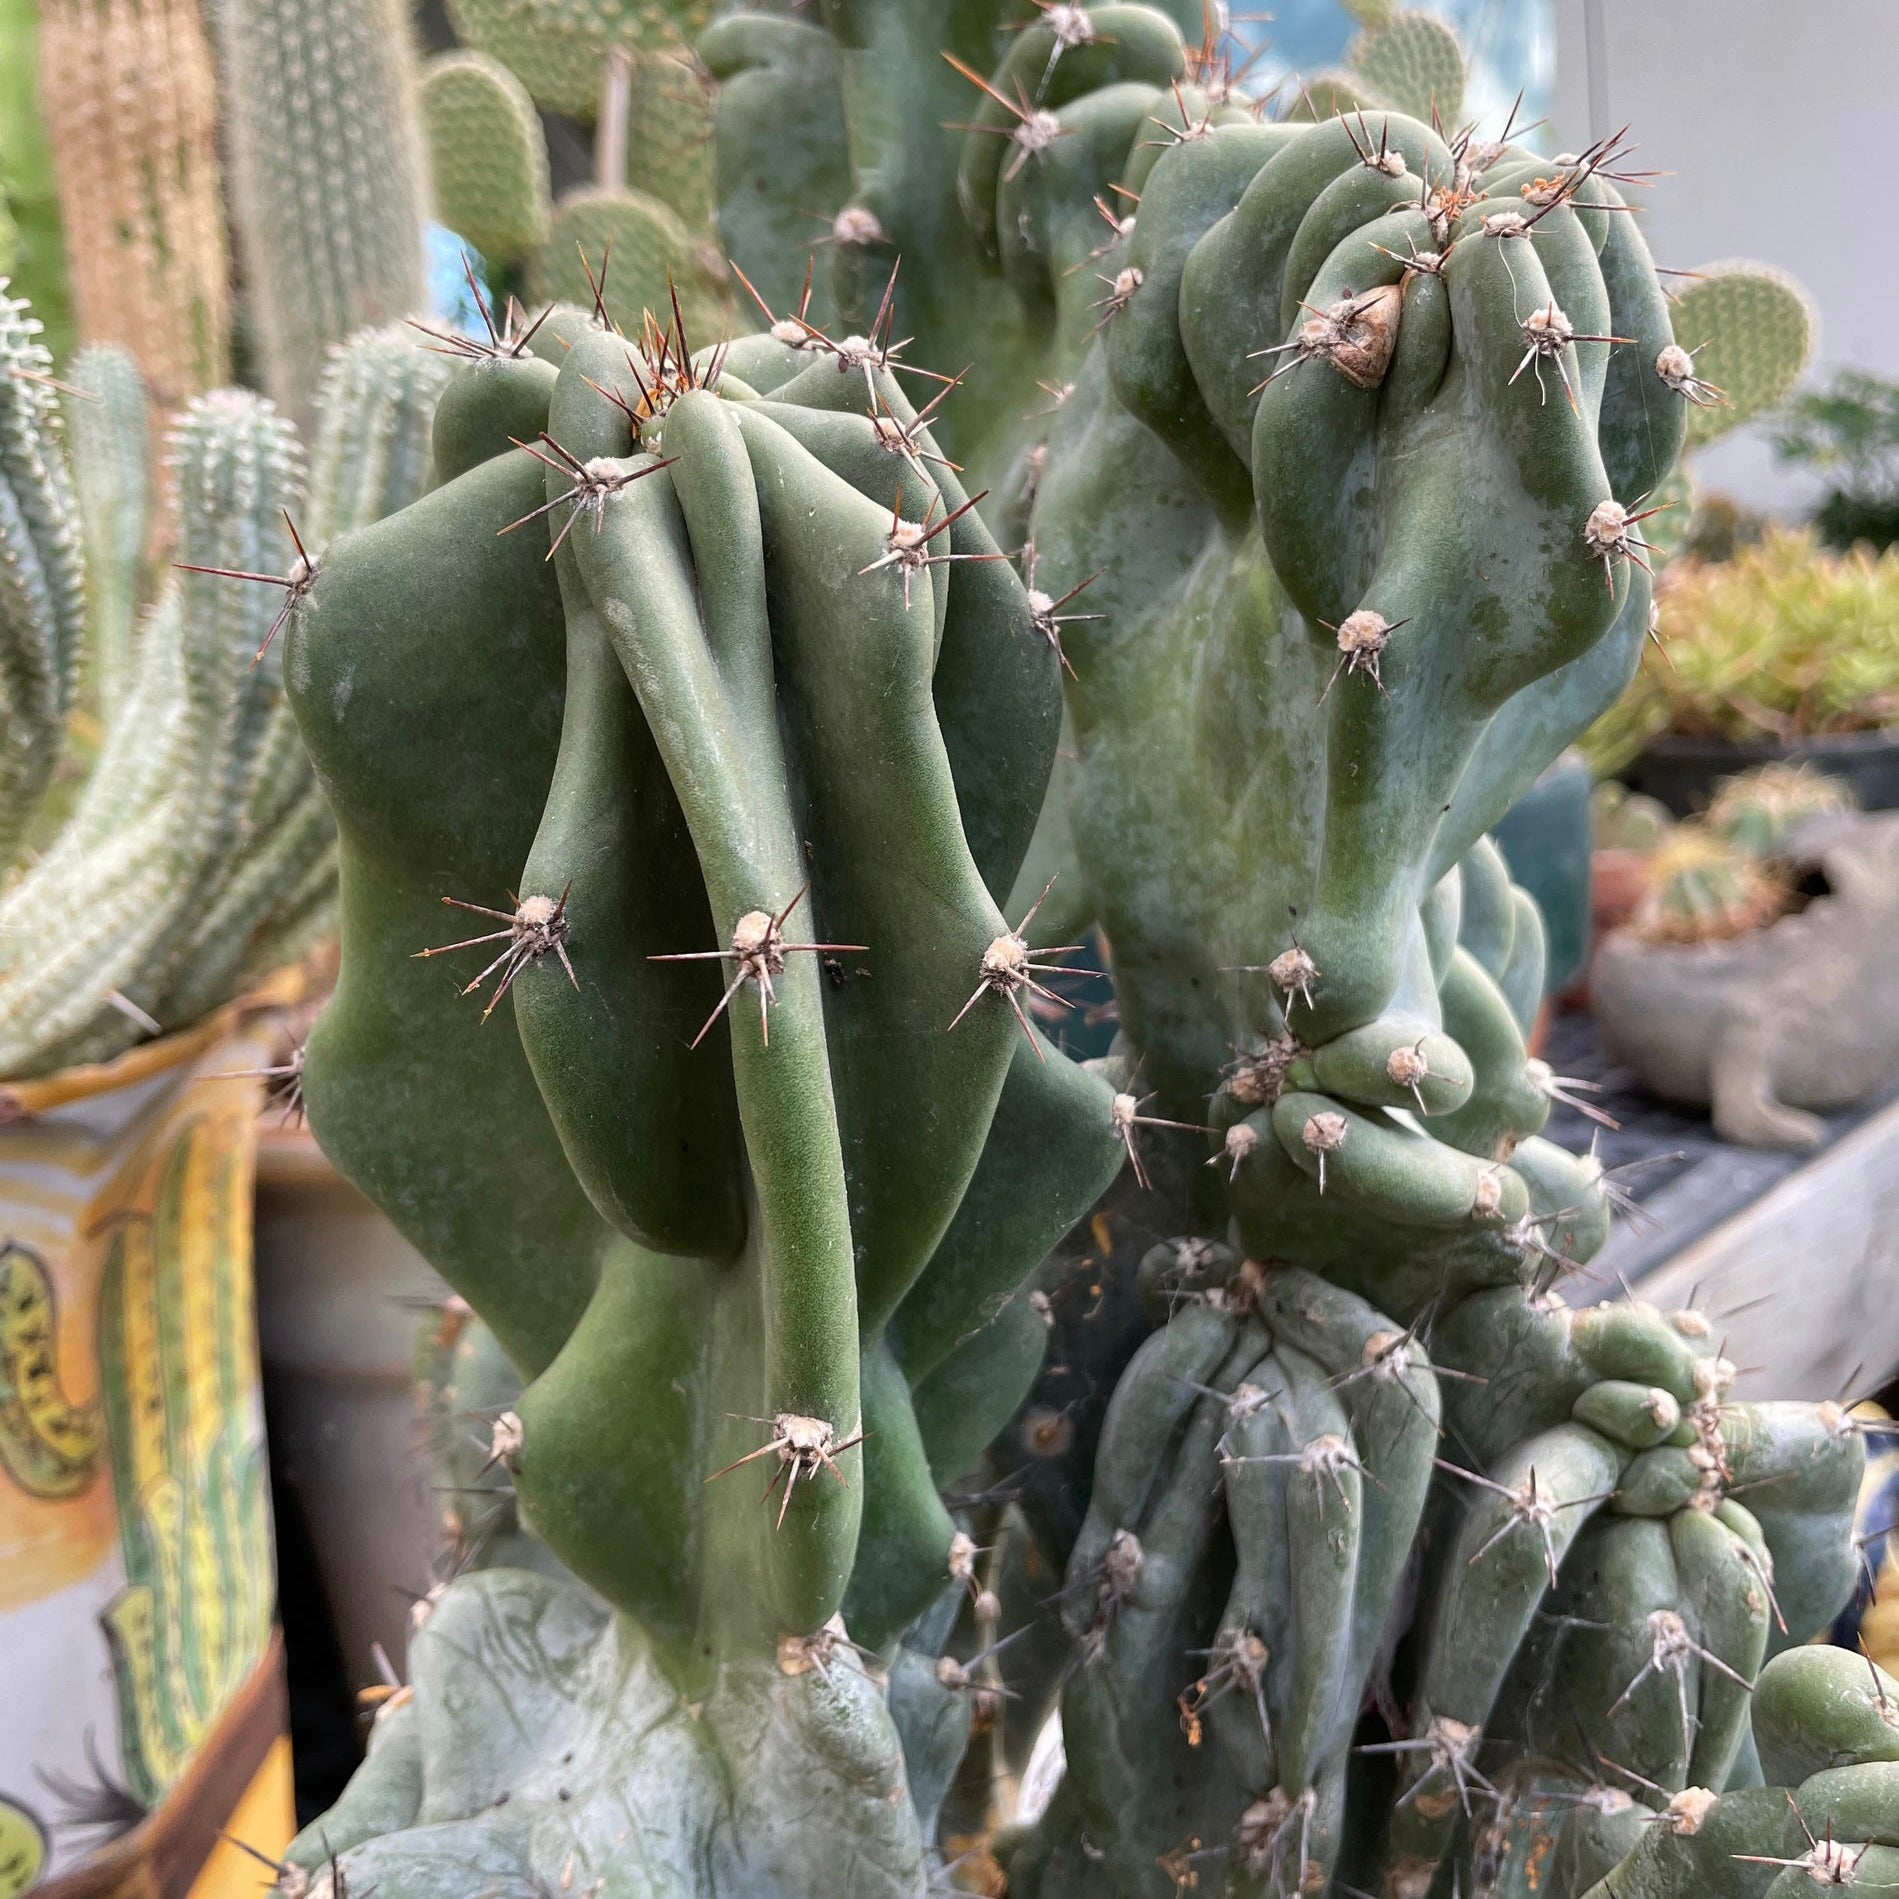 Cereus peruvianus monstrose - Montrose Cactus